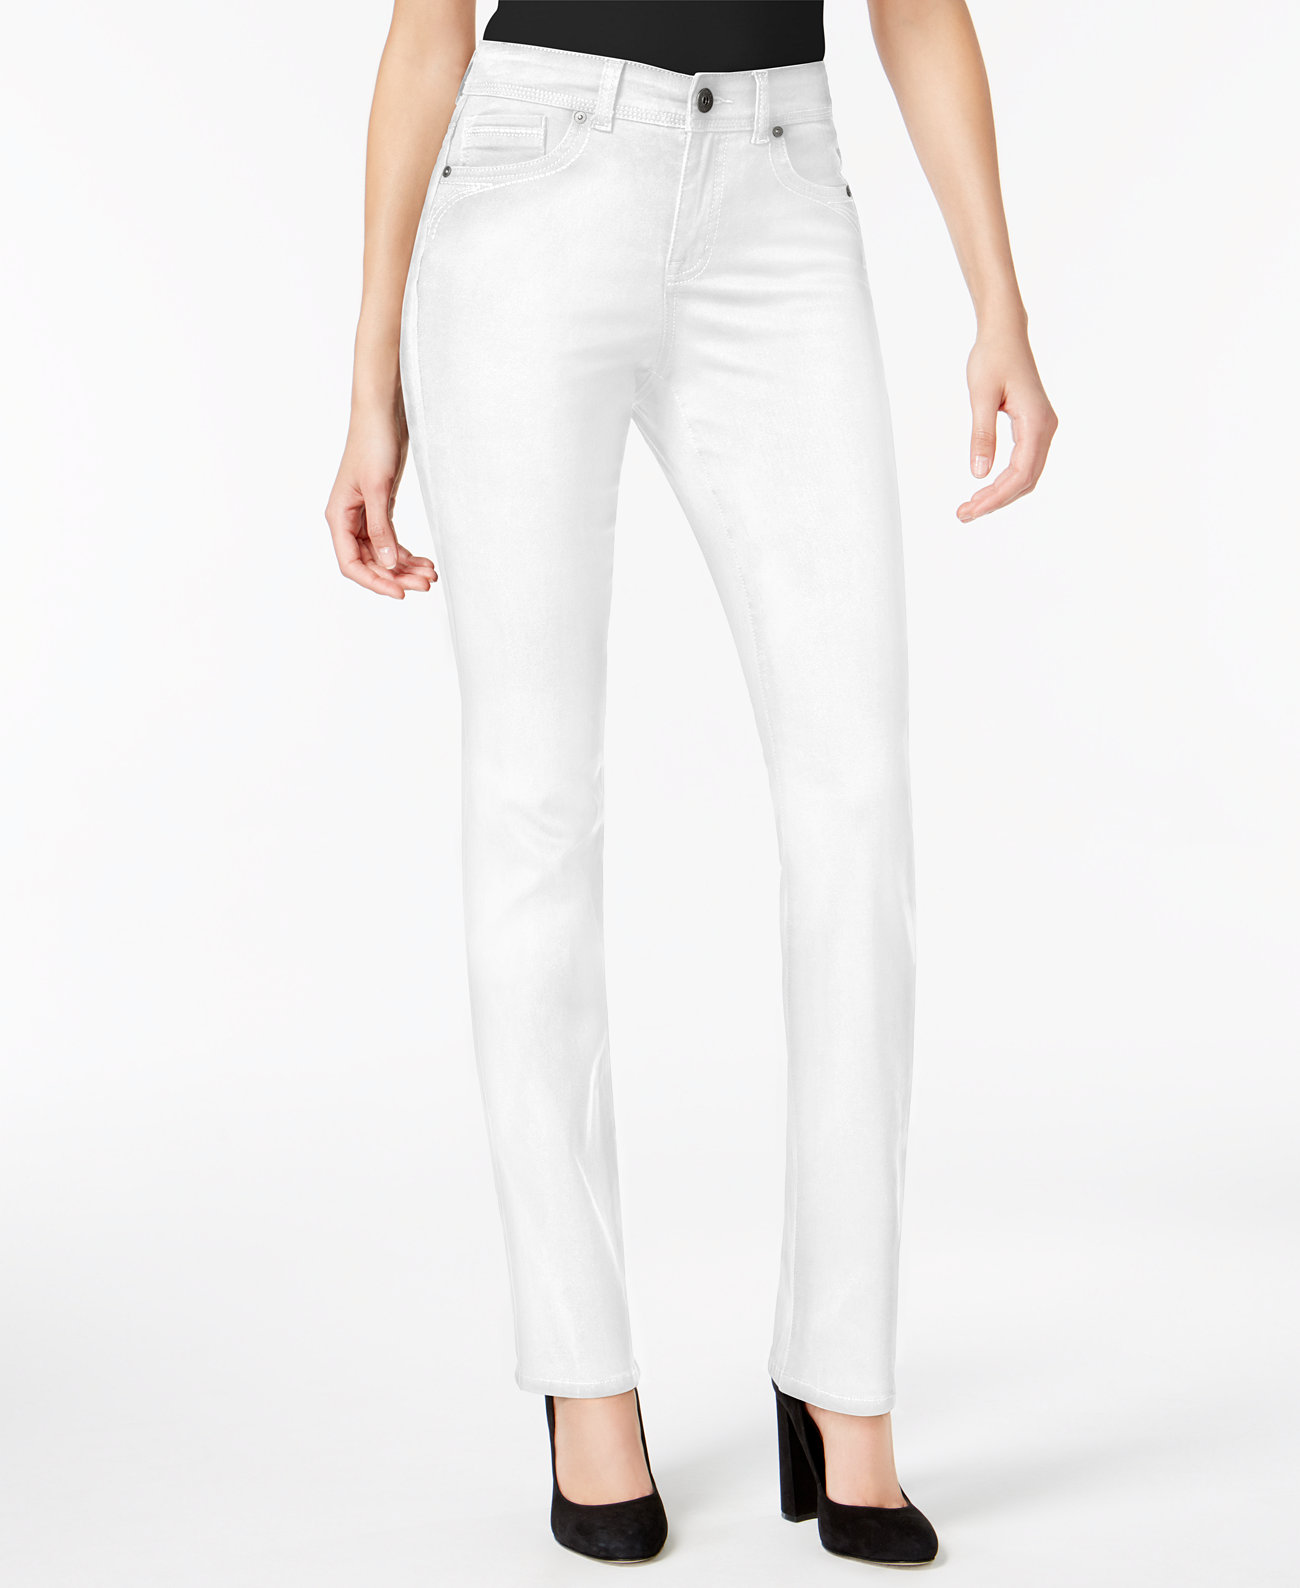 Прямые джинсы с контролем живота, созданные для Macy's Style & Co